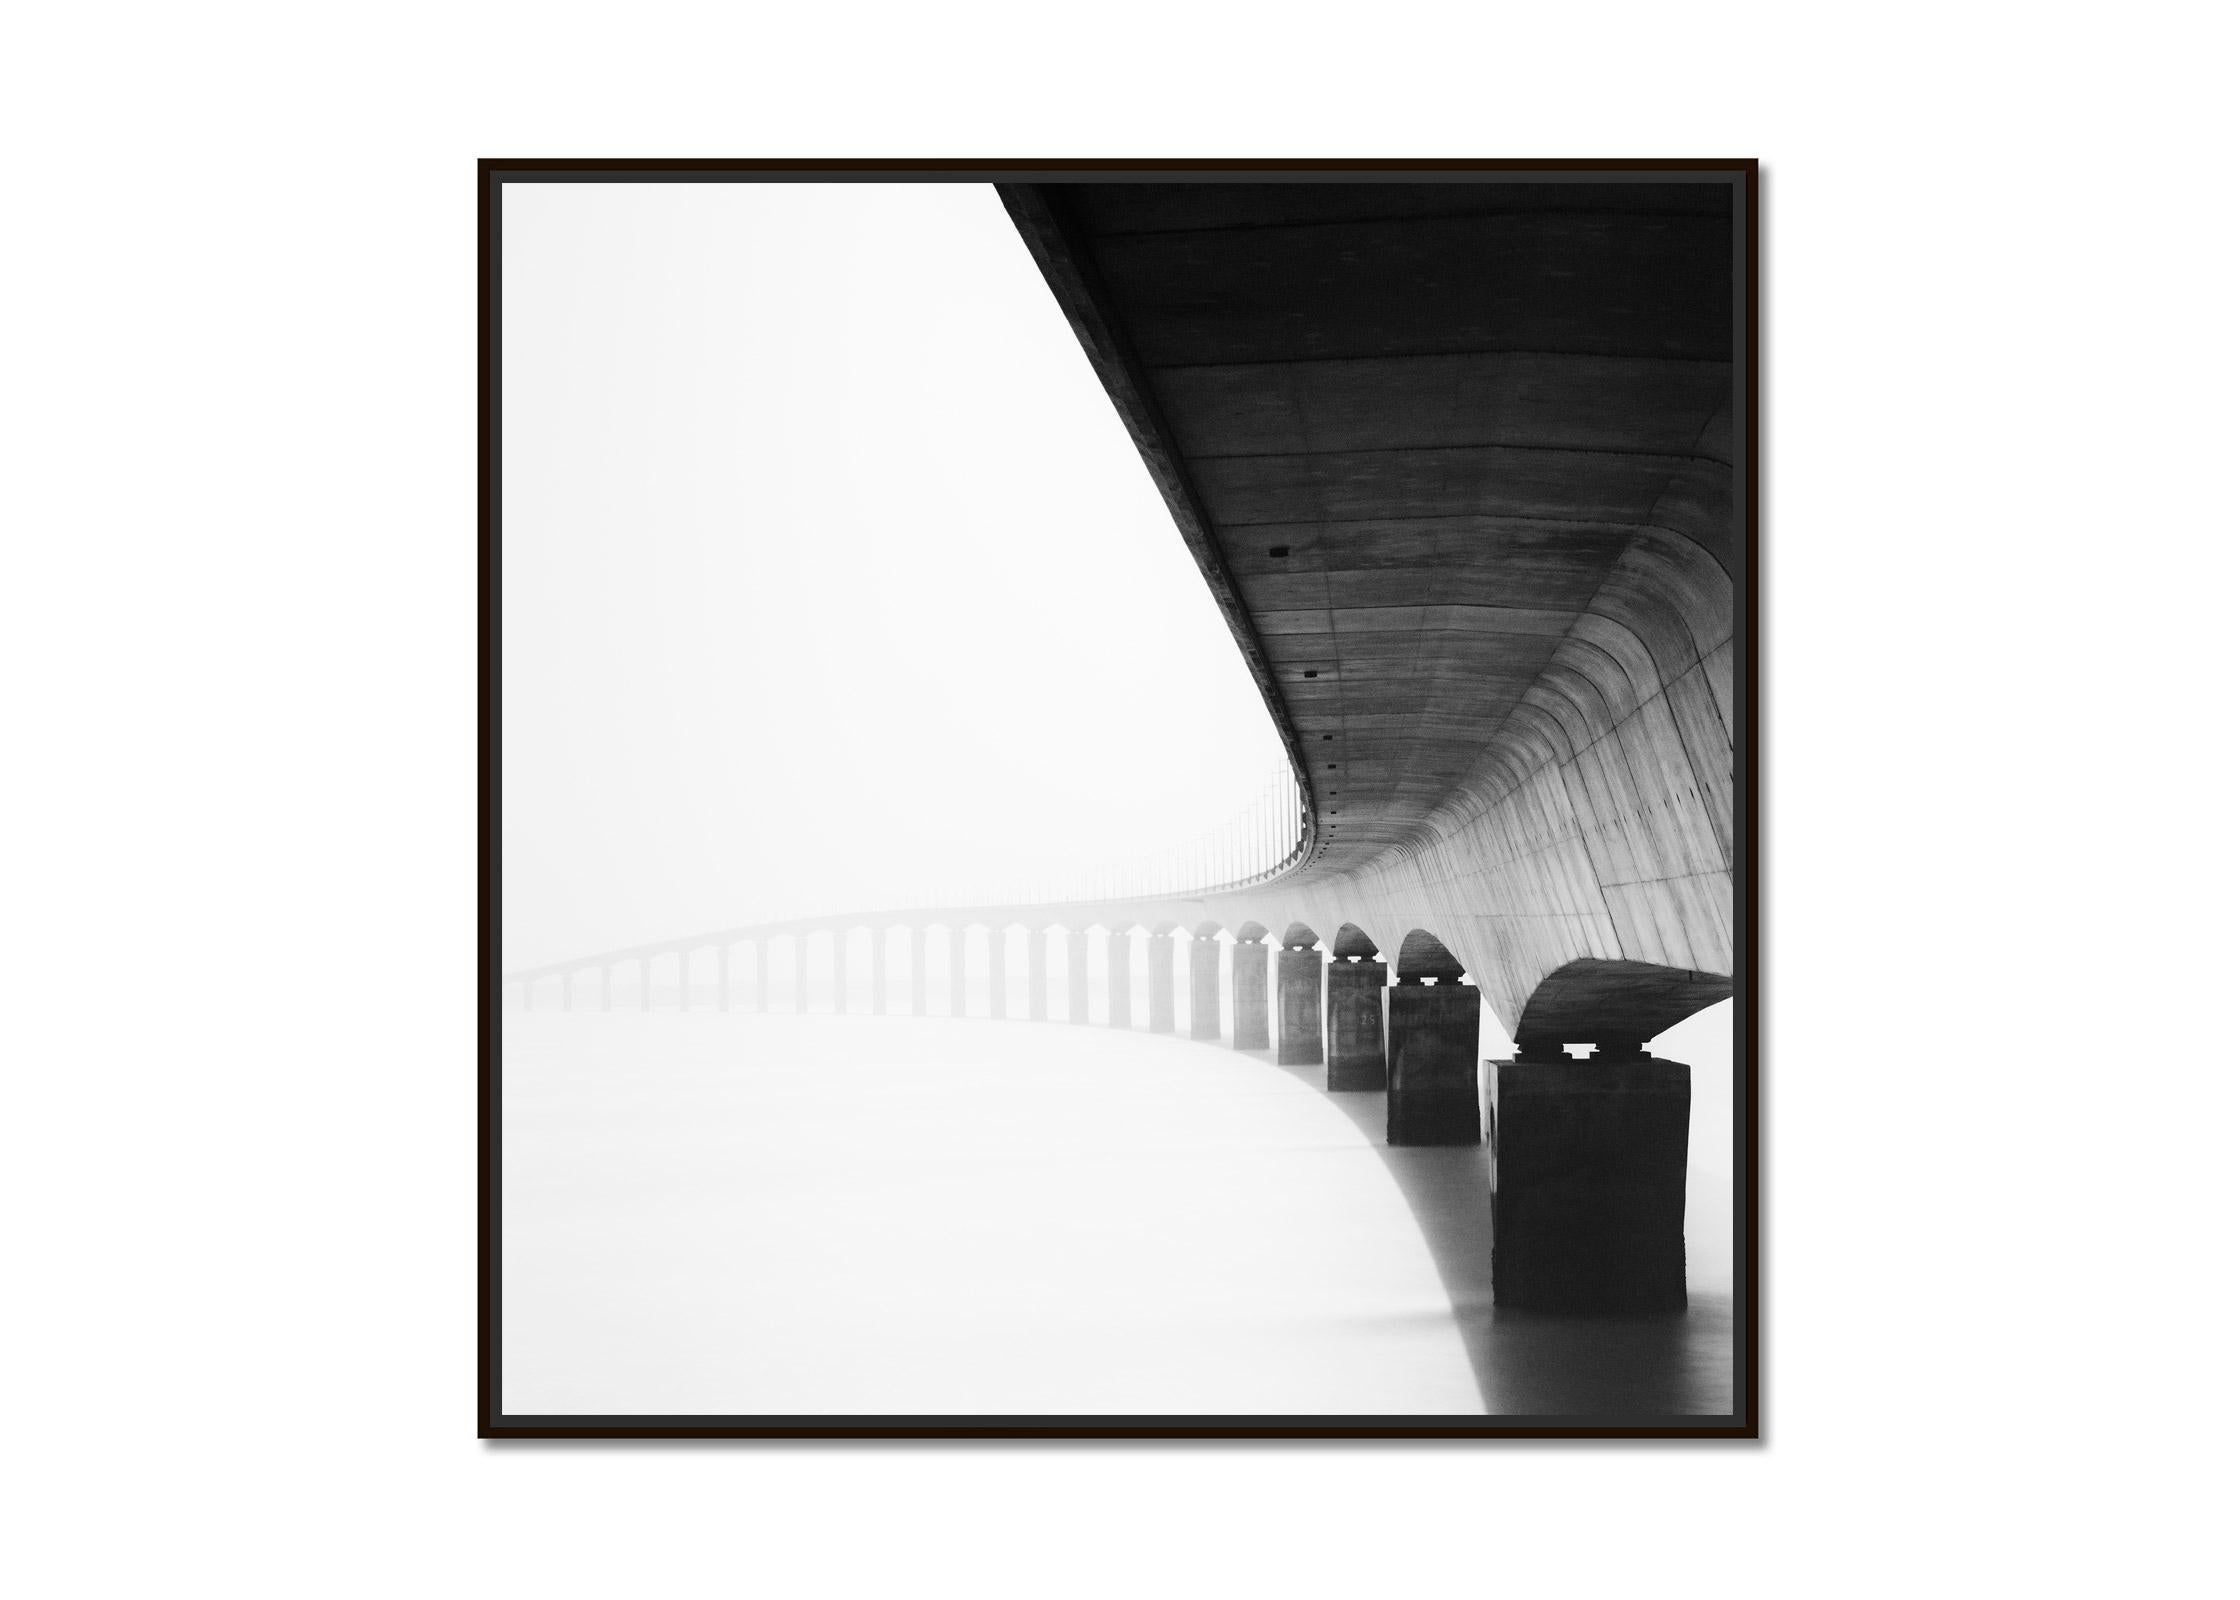 Ile de Re Brücke, sonniger Morgen, Frankreich, Schwarz-Weiß-Fotografie, Landschaft – Photograph von Gerald Berghammer, Ina Forstinger